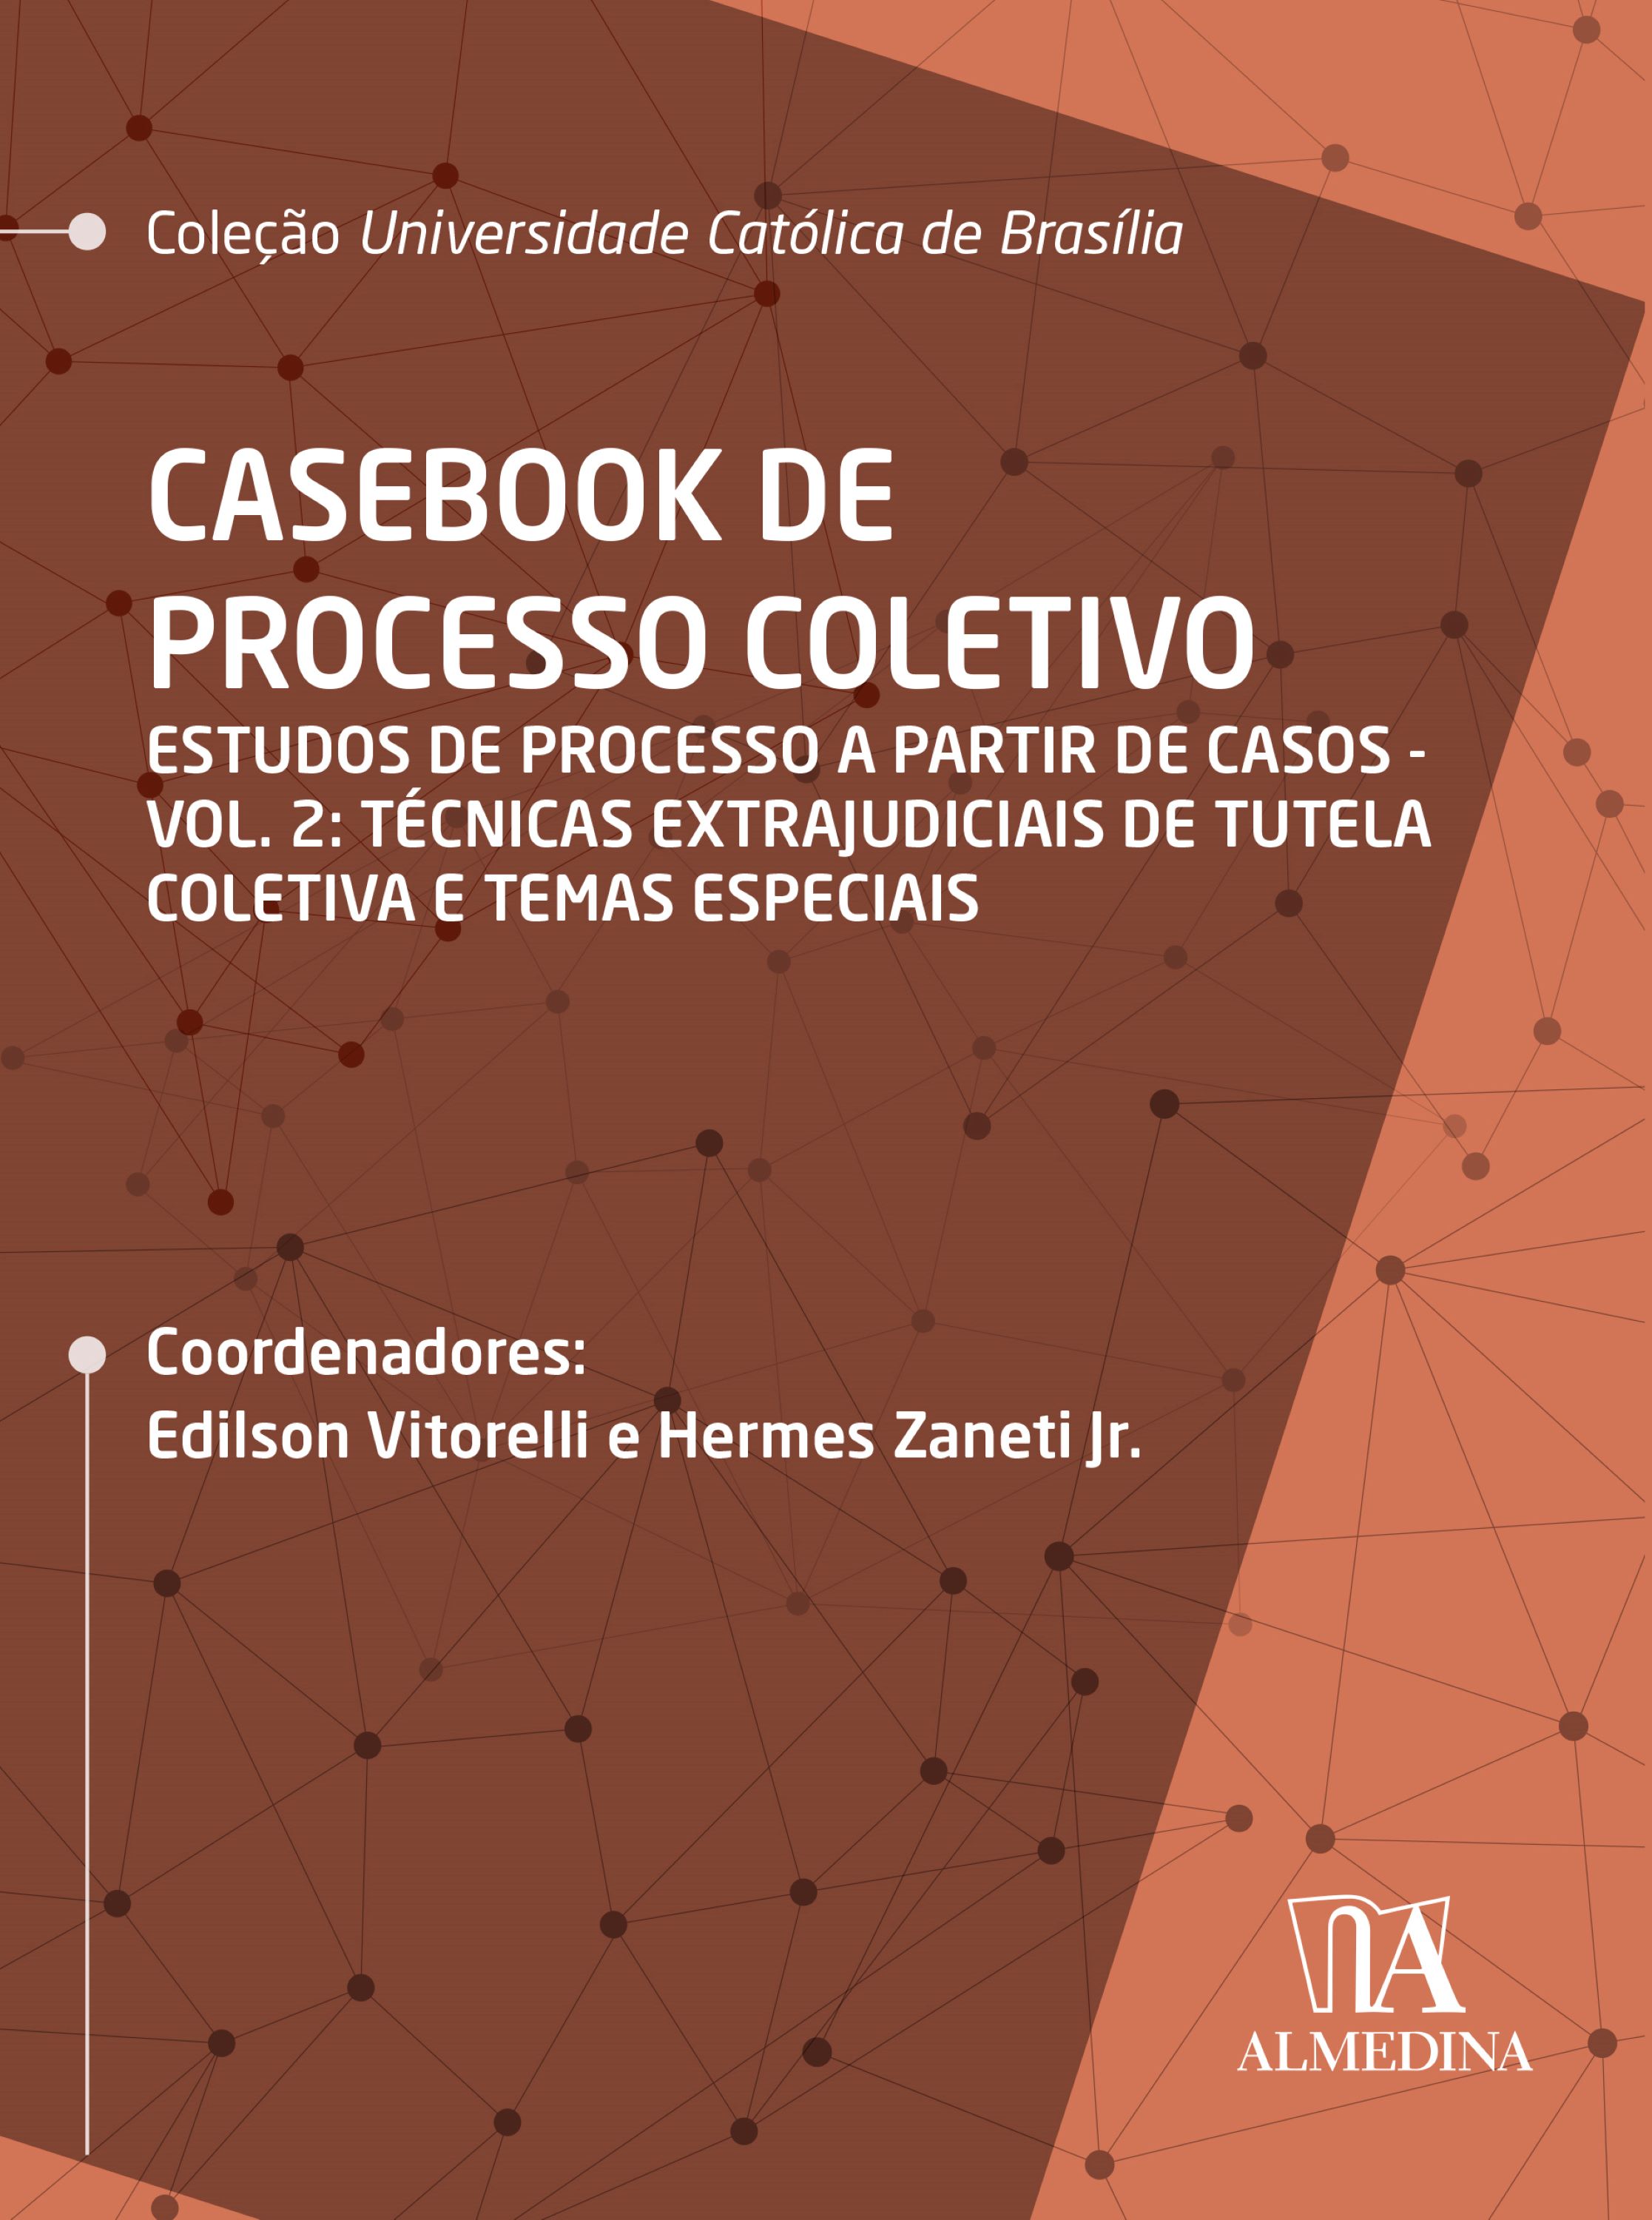 Casebook de Processo Coletivo – Vol. II